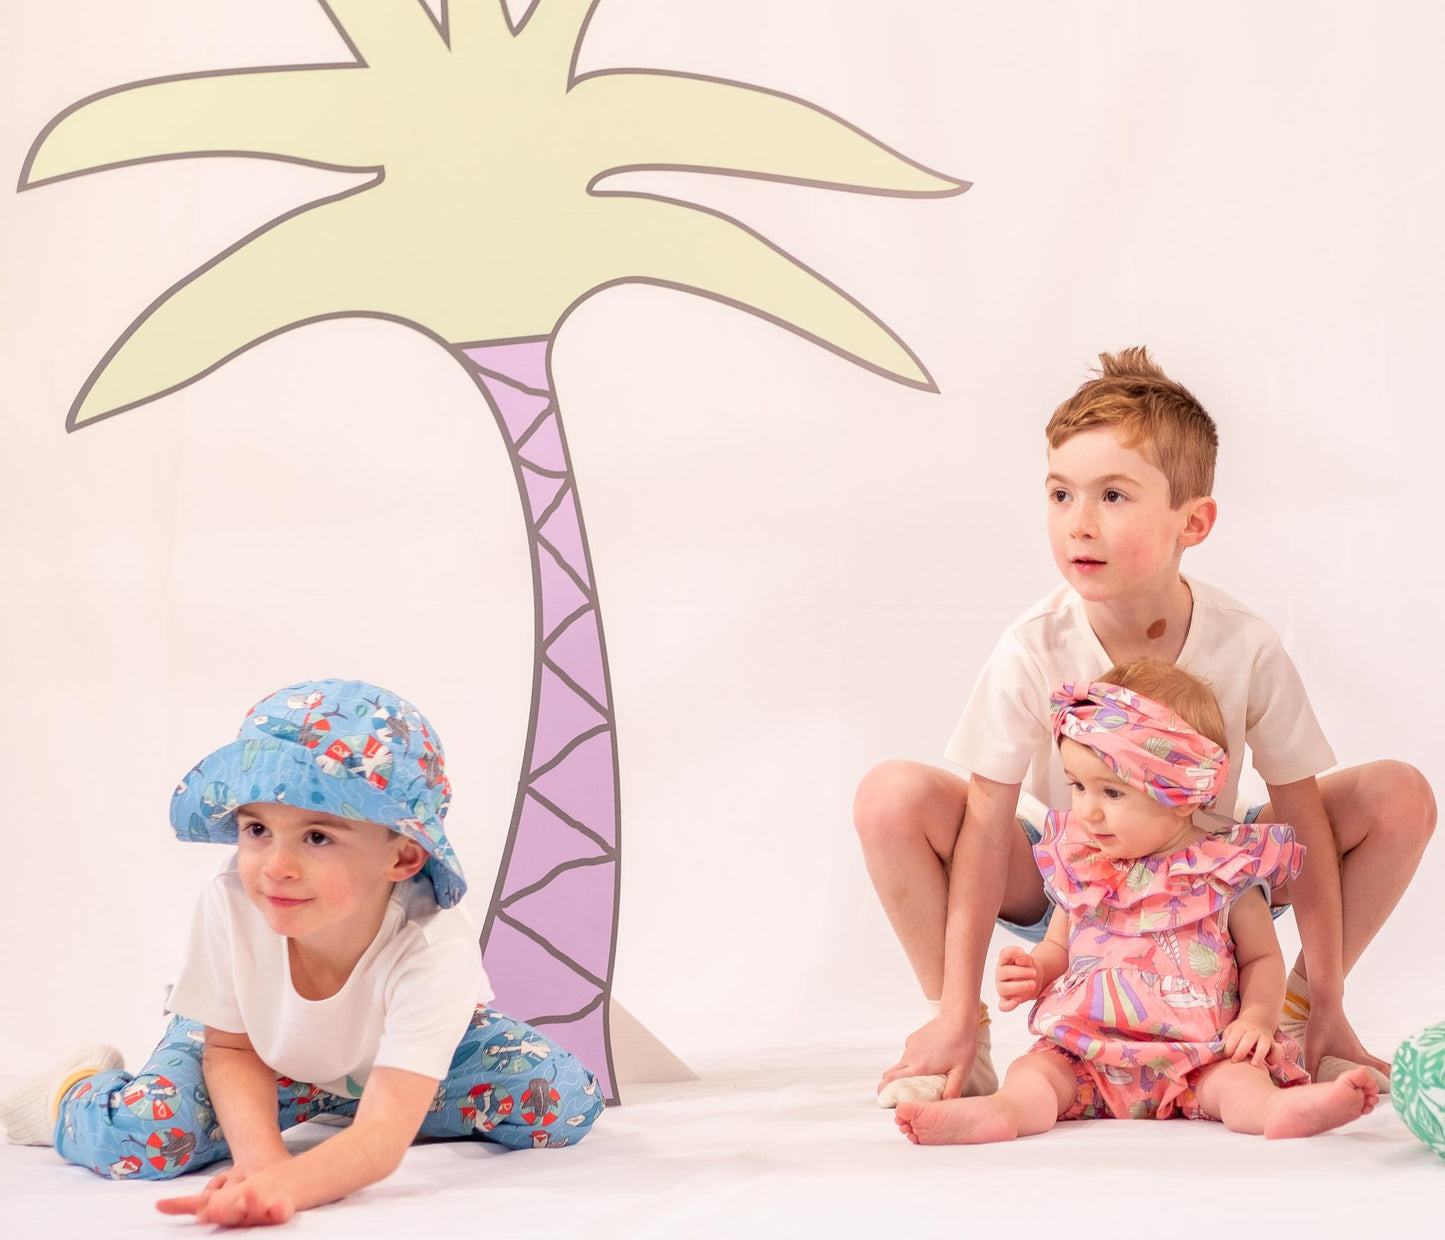 童裝有機棉配飾 - 海藍海鷗印花太陽帽